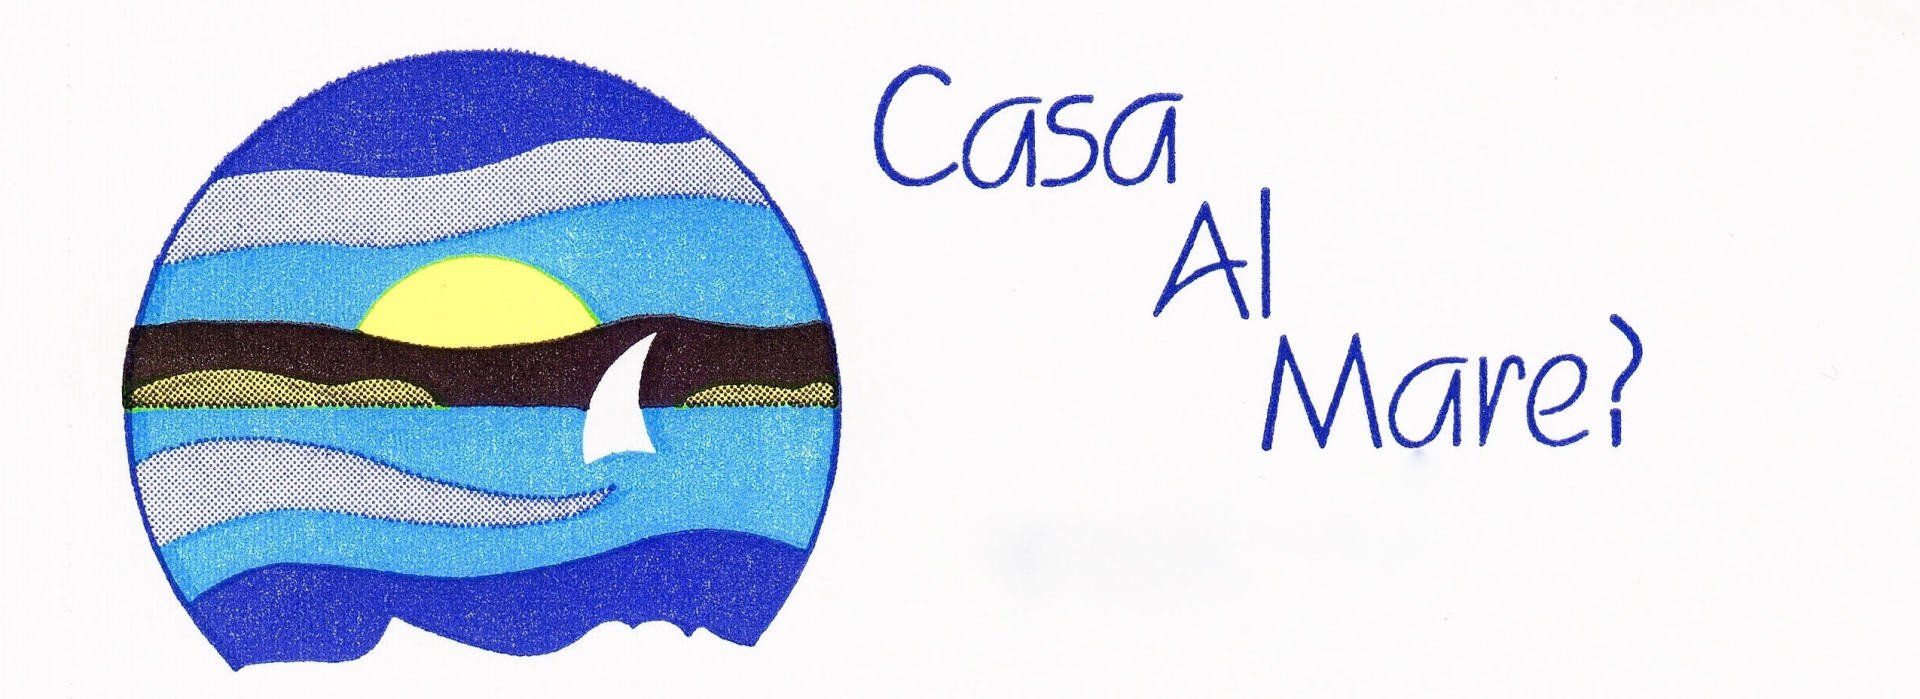 AGENZIA-IMMOBILIARE-CASA-AL-MARE?-Logo